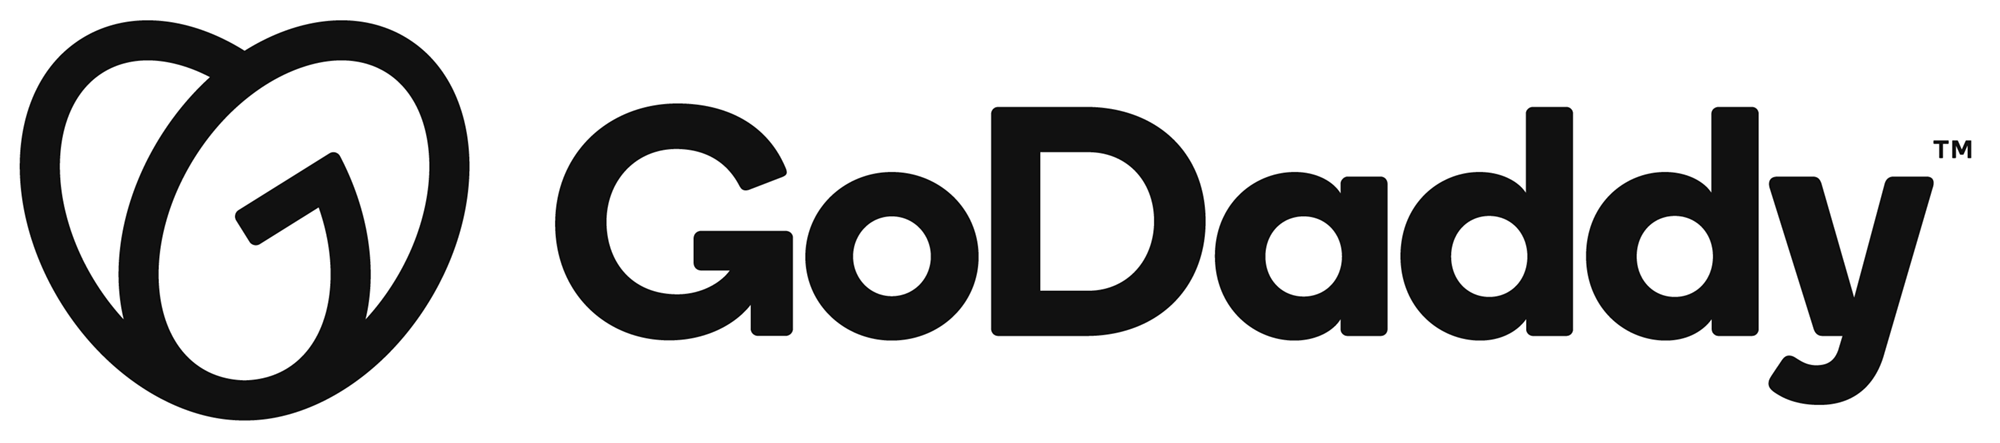 godaddy_2020_logo_a.png